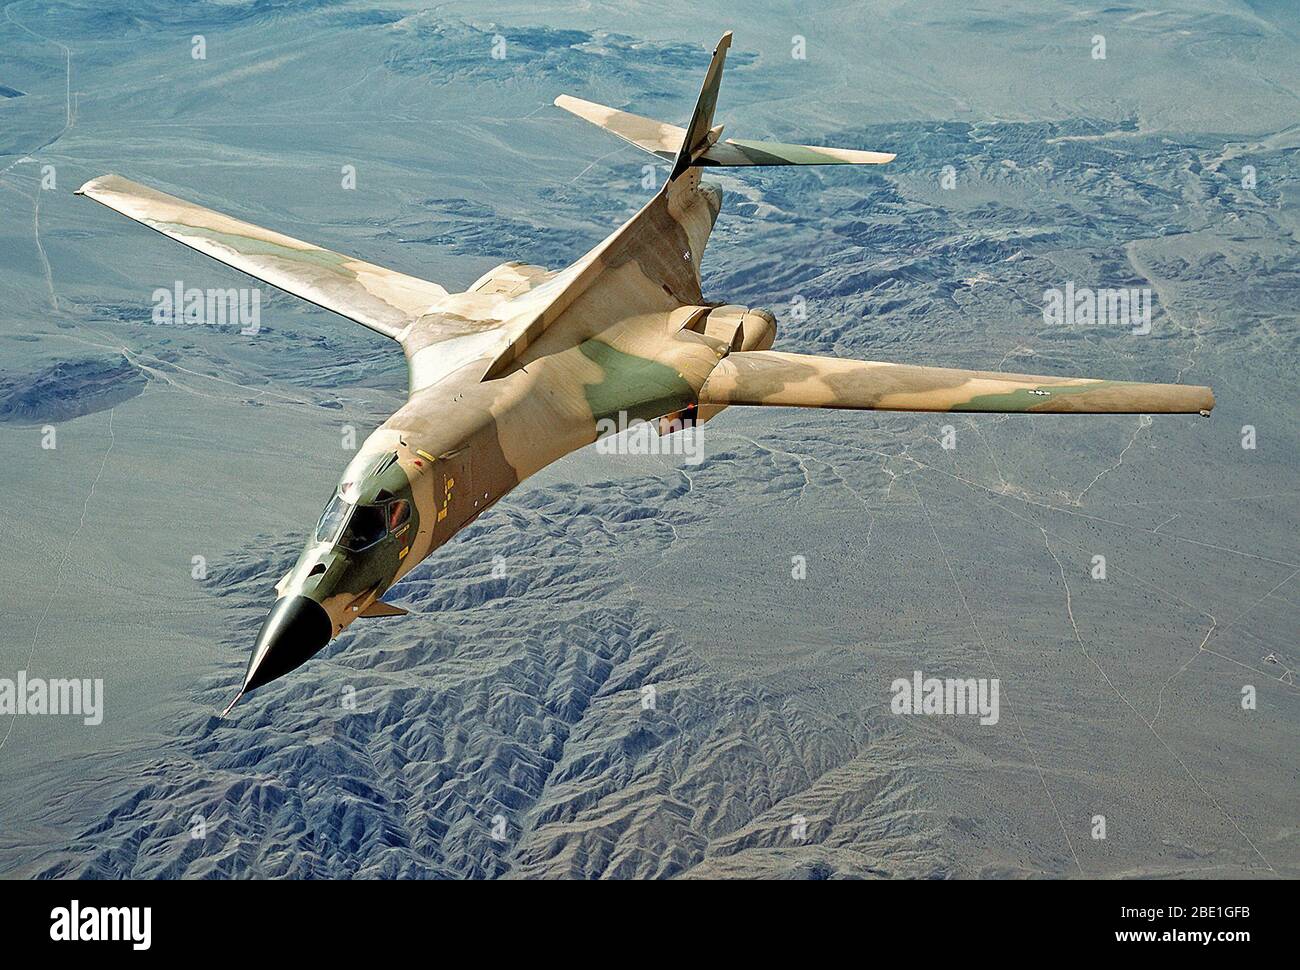 1980 - Un avion vue frontale d'un bombardier B-1 avec son nouveau schéma de peinture de camouflage Banque D'Images